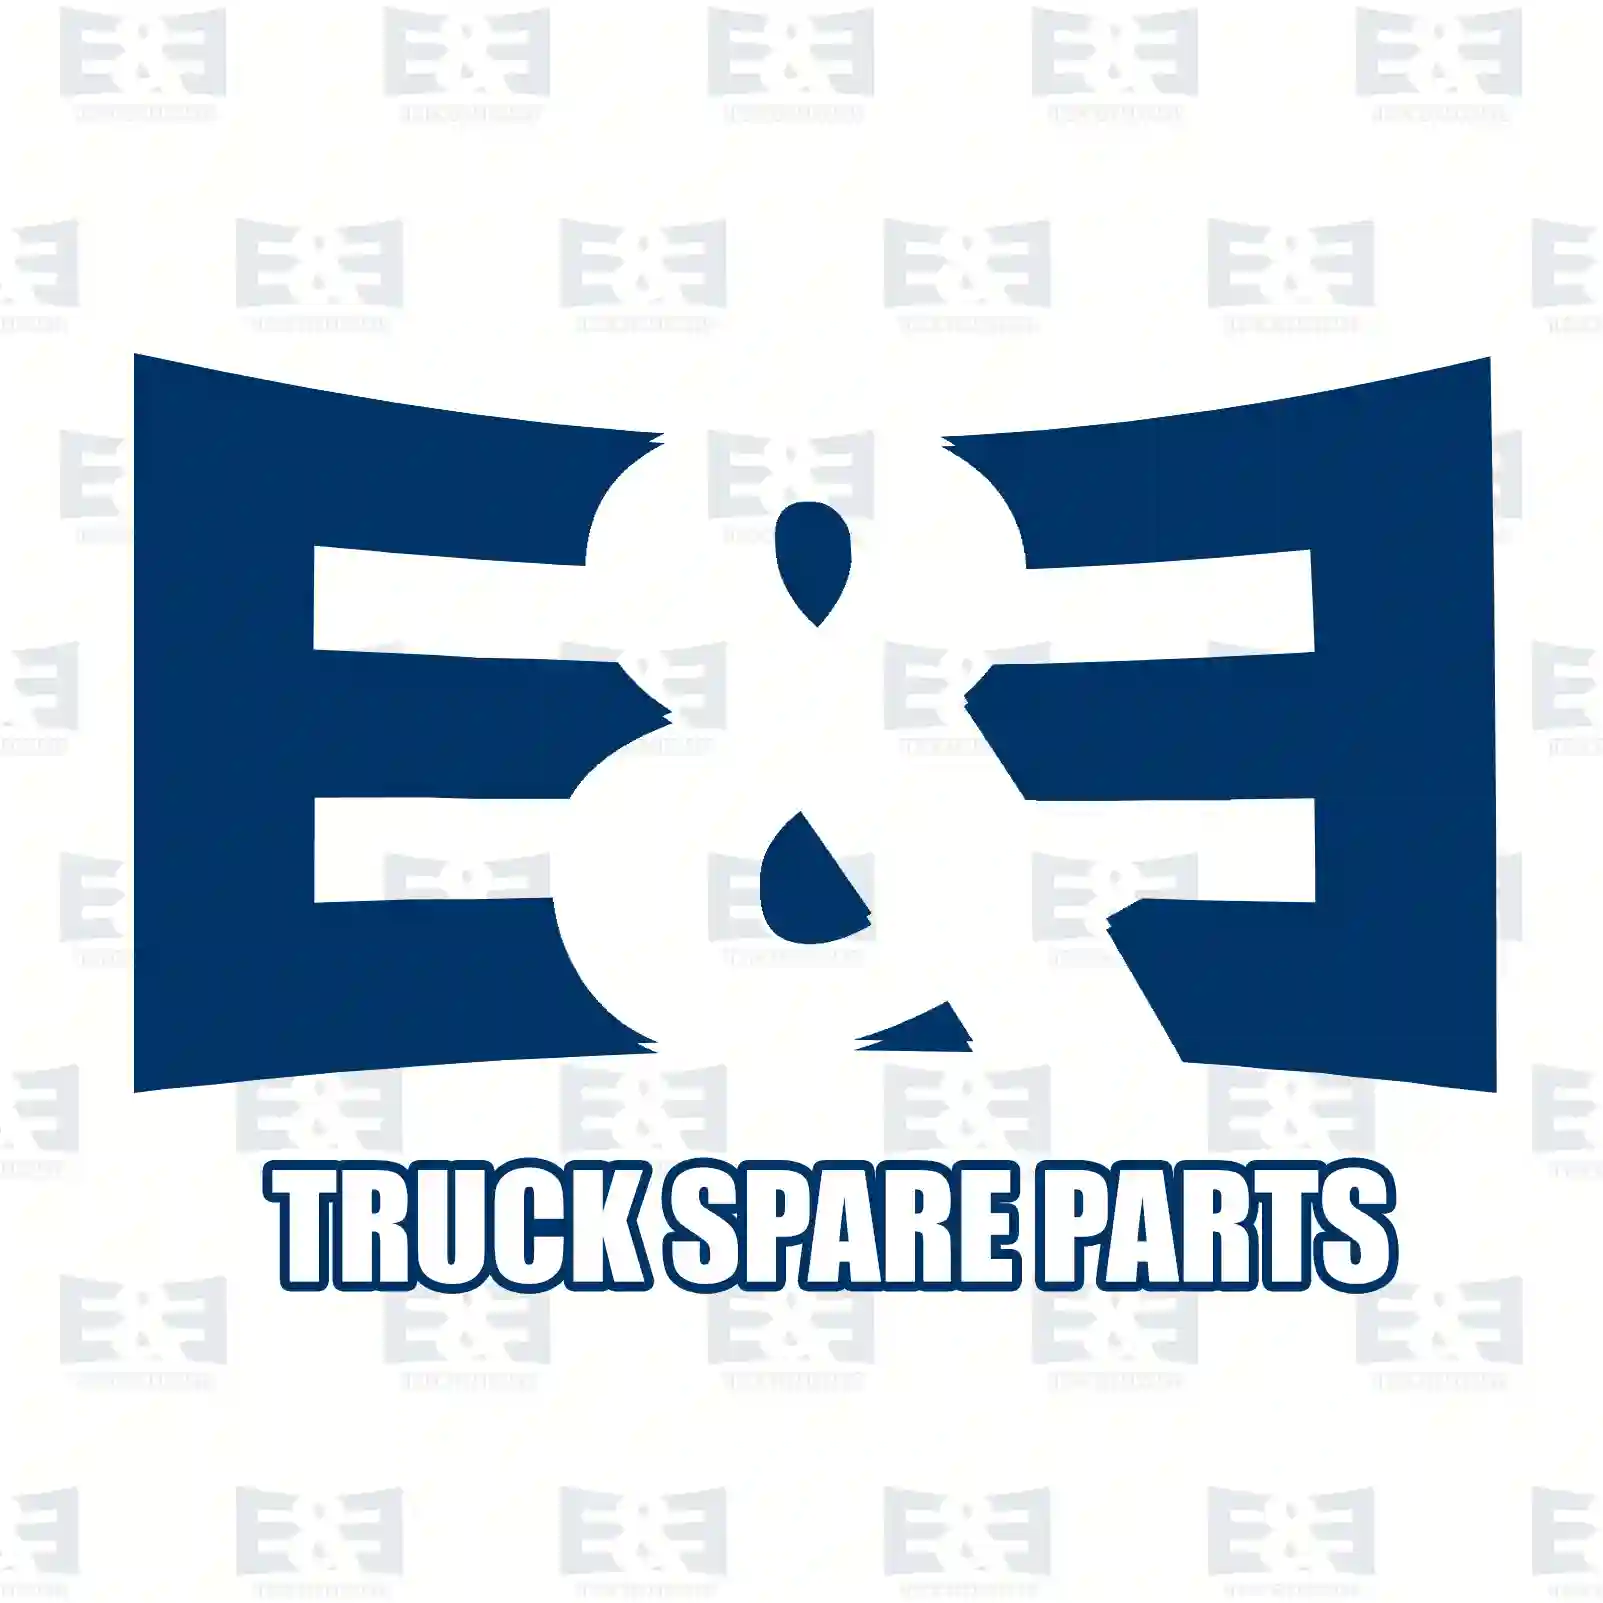 Turn signal lamp, right, 2E2290111, 504104575, ZG21219-0008 ||  2E2290111 E&E Truck Spare Parts | Truck Spare Parts, Auotomotive Spare Parts Turn signal lamp, right, 2E2290111, 504104575, ZG21219-0008 ||  2E2290111 E&E Truck Spare Parts | Truck Spare Parts, Auotomotive Spare Parts